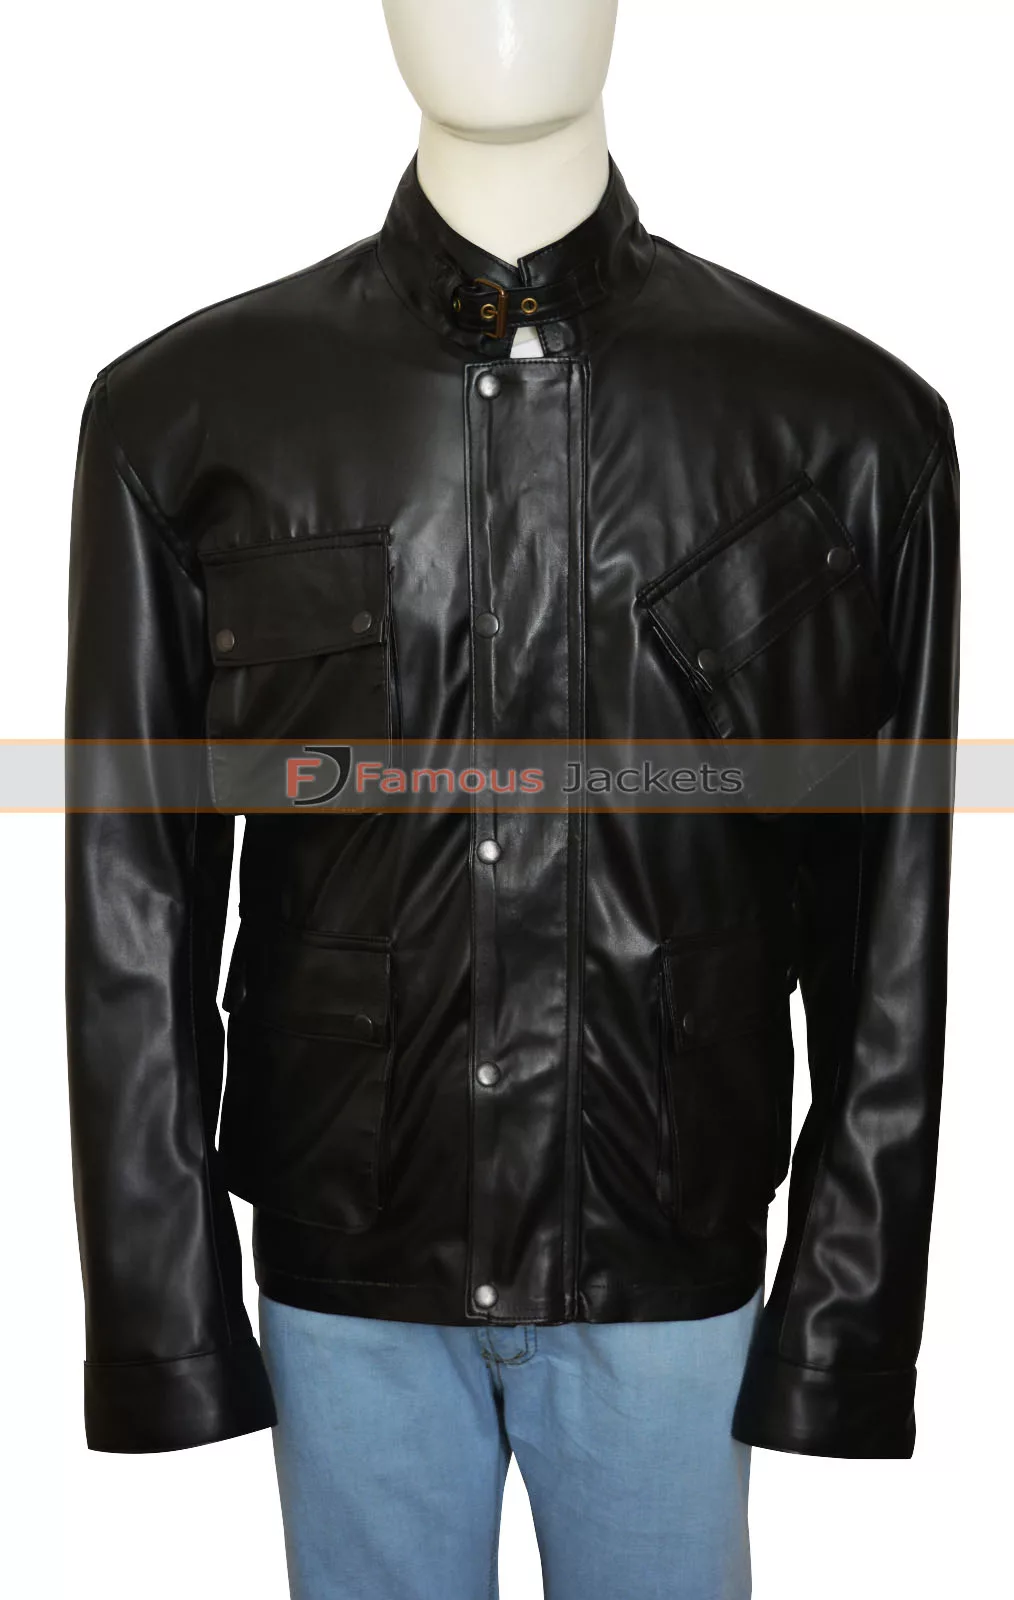 Blitz Tom Brant Jason Statham Movie Leather Jacket - Famous Jackets